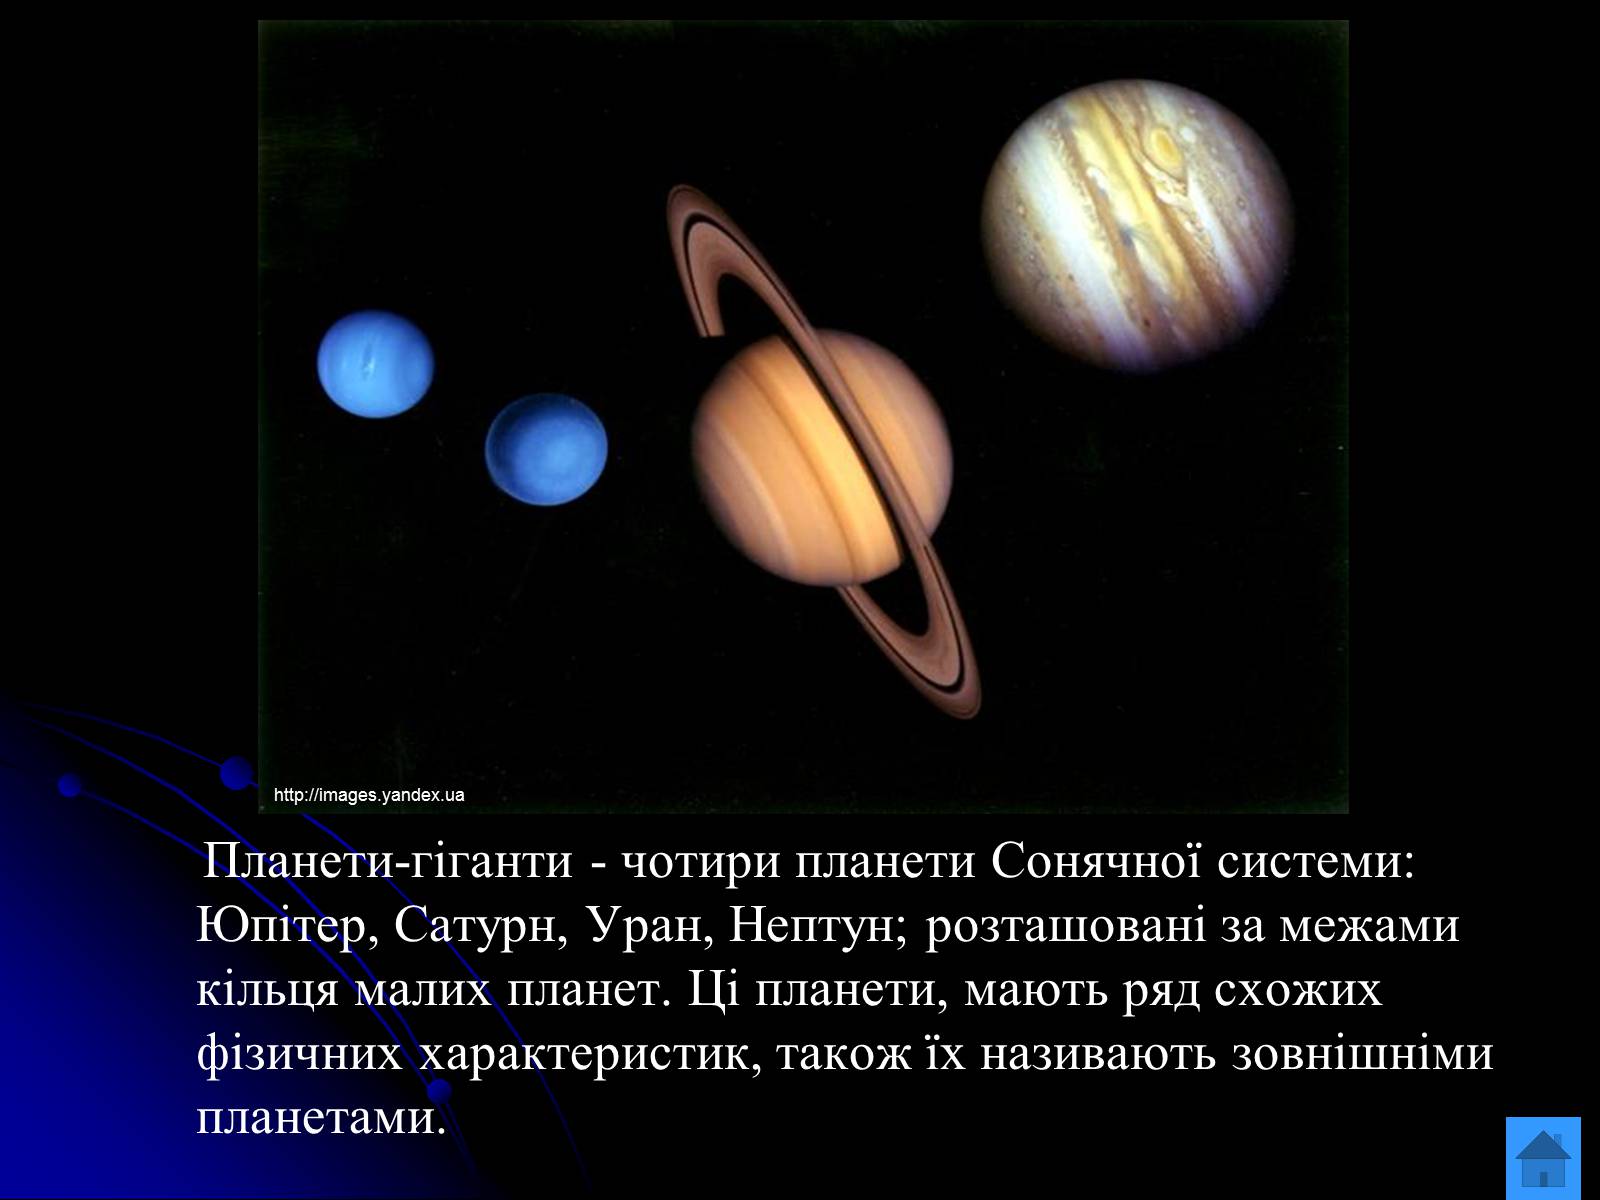 Соединение сатурн плутон. Сатурн Уран Нептун школа 4 класс кратко. Русский язык 2 класс окружающий мир Сатурн Уран Нептун. Яка Планета Сонячної системи має найбільшу кількість супутників?.